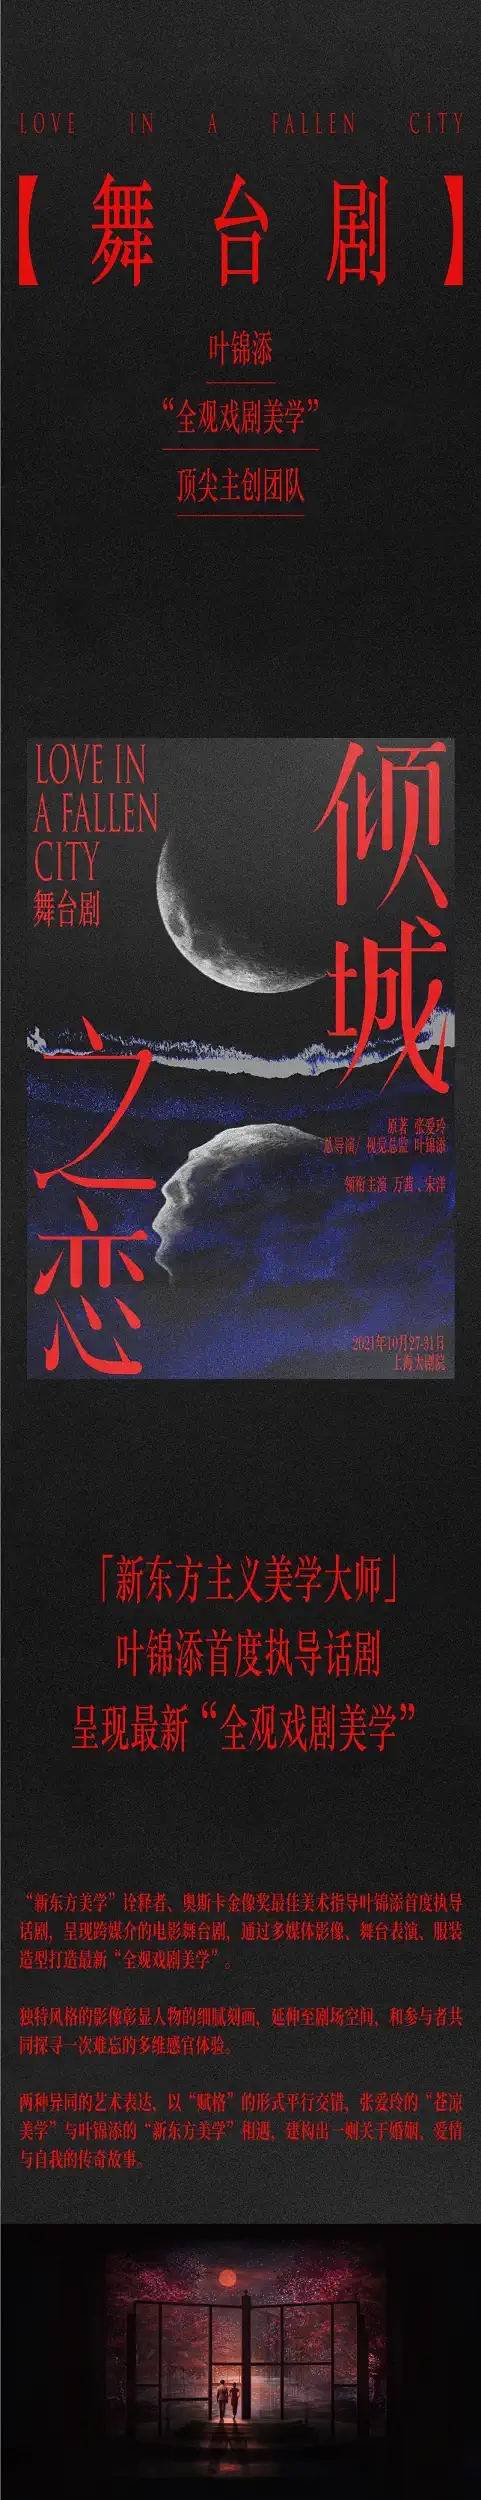 2021叶锦添导演·万茜、宋洋主演舞台剧《倾城之恋》-杭州站